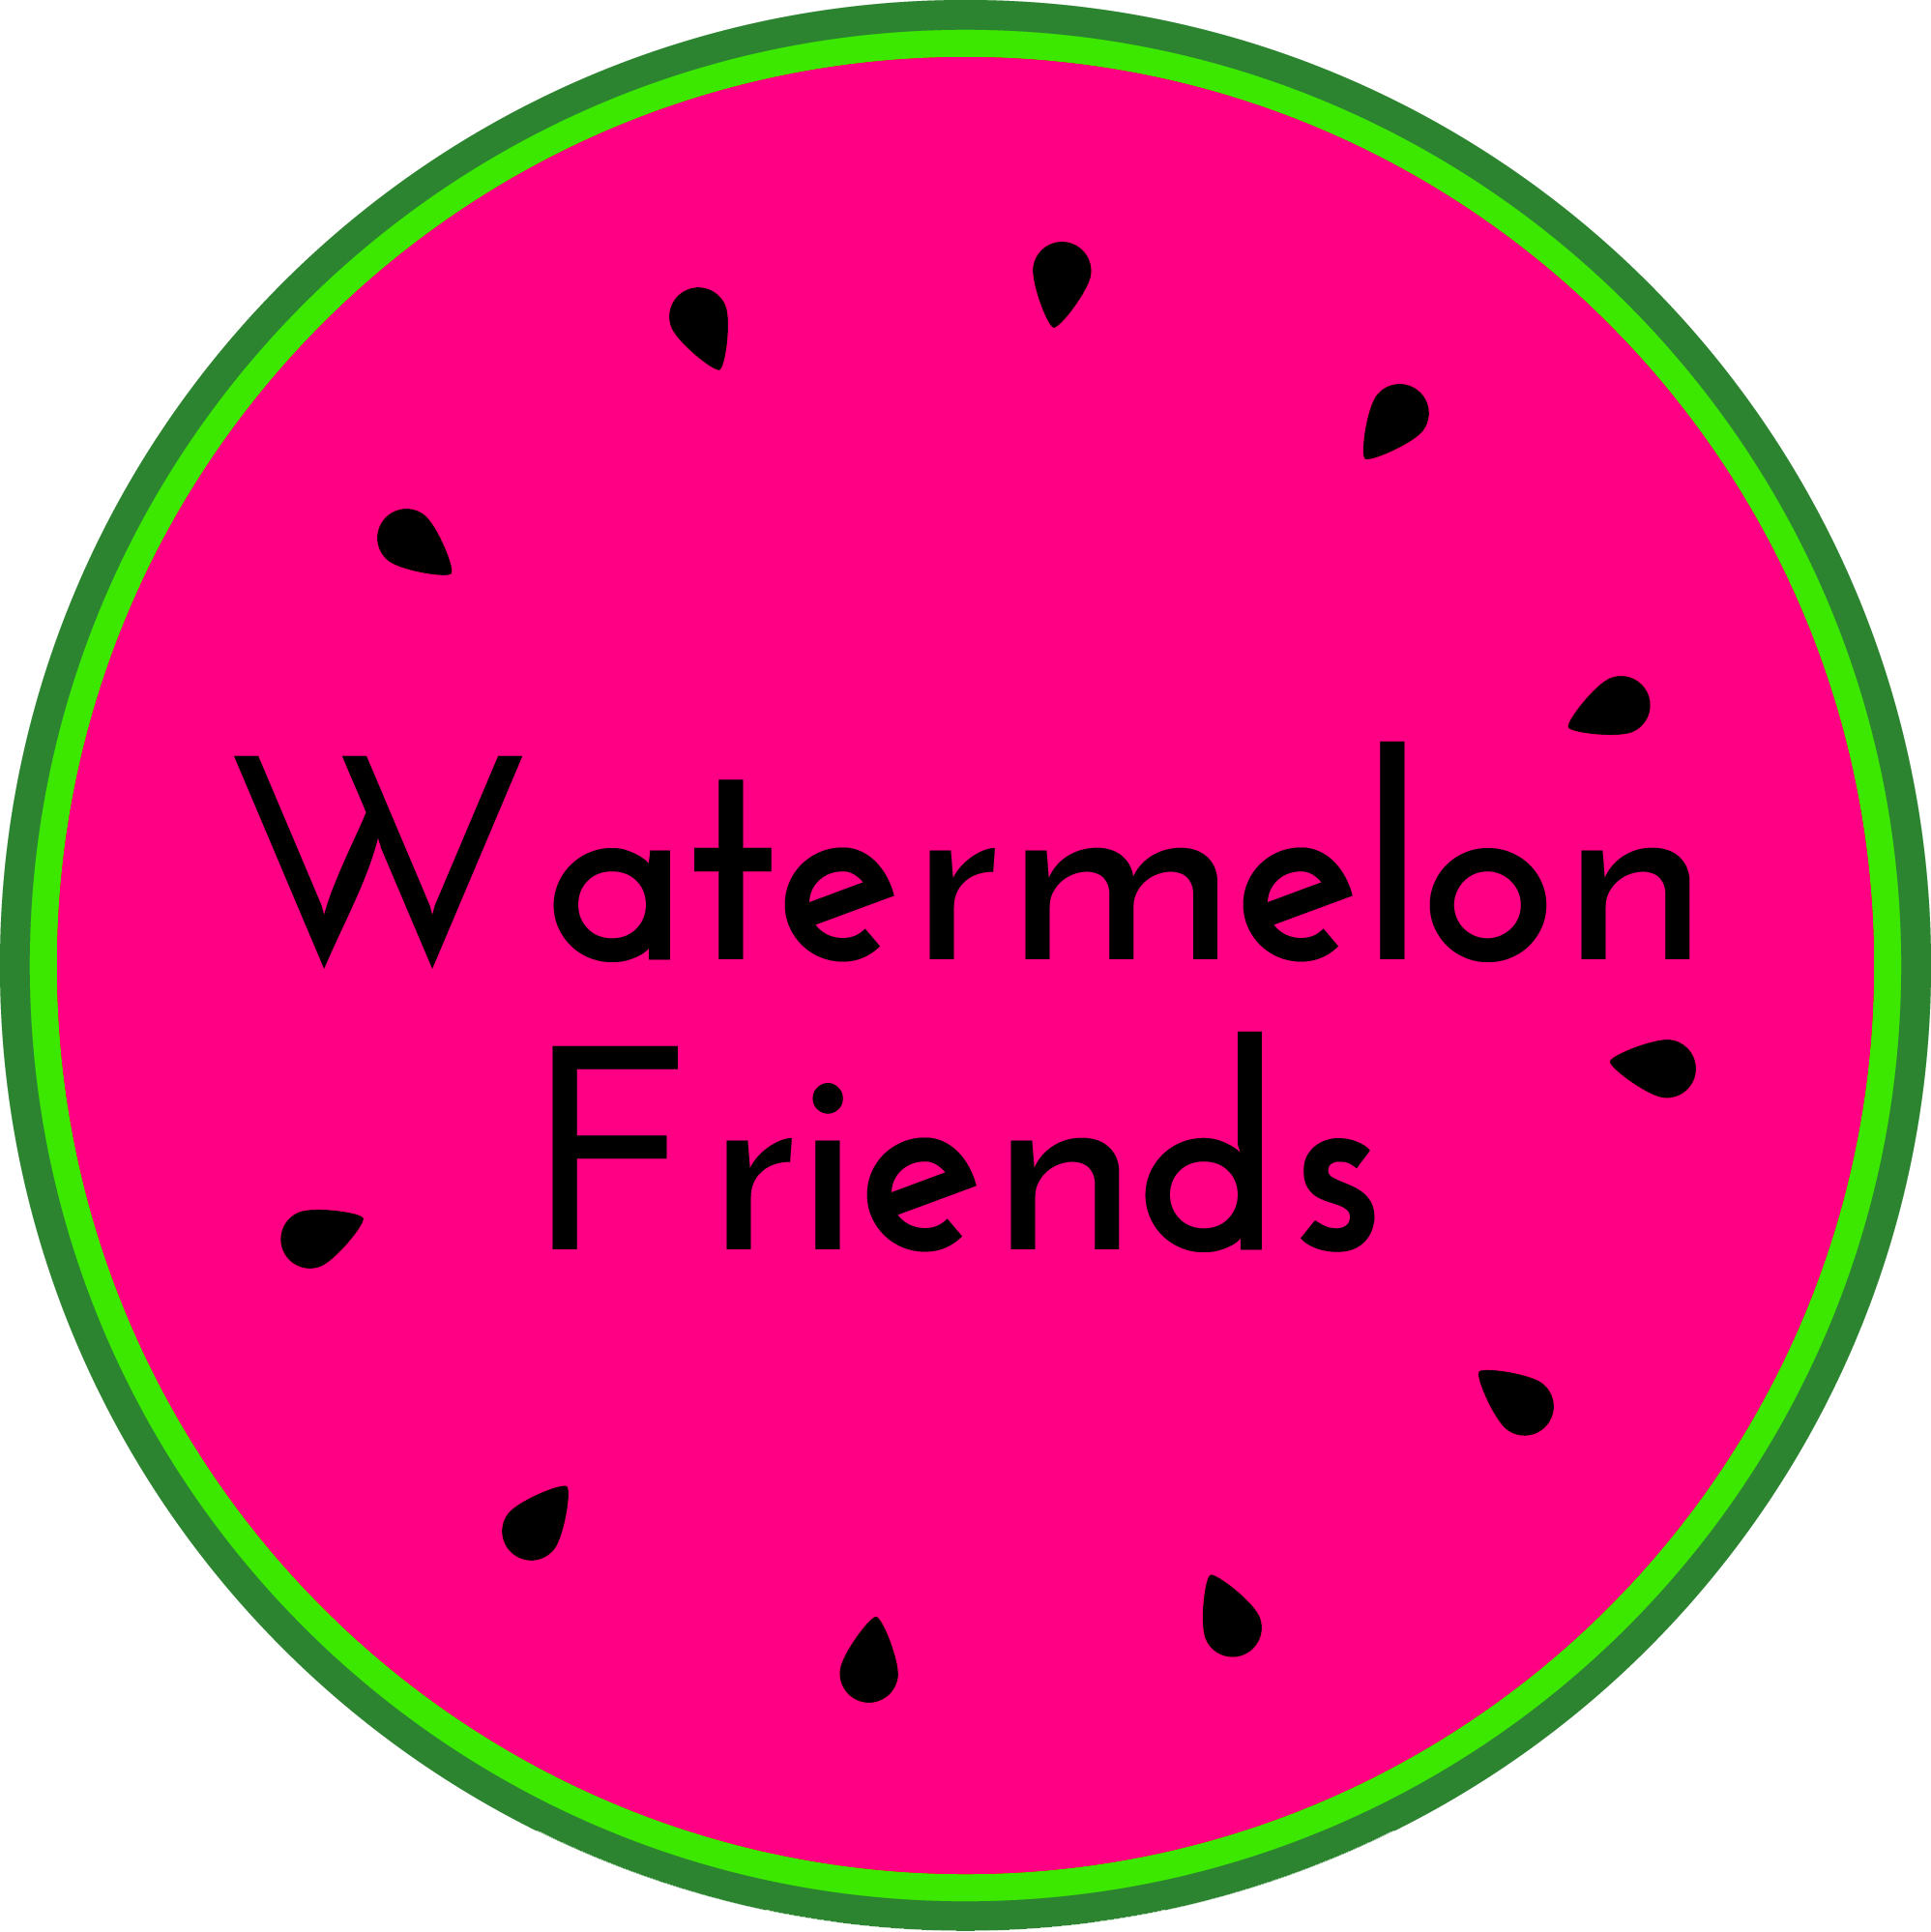 Luca Friends Watermelon Sticker by Curlyredflowers